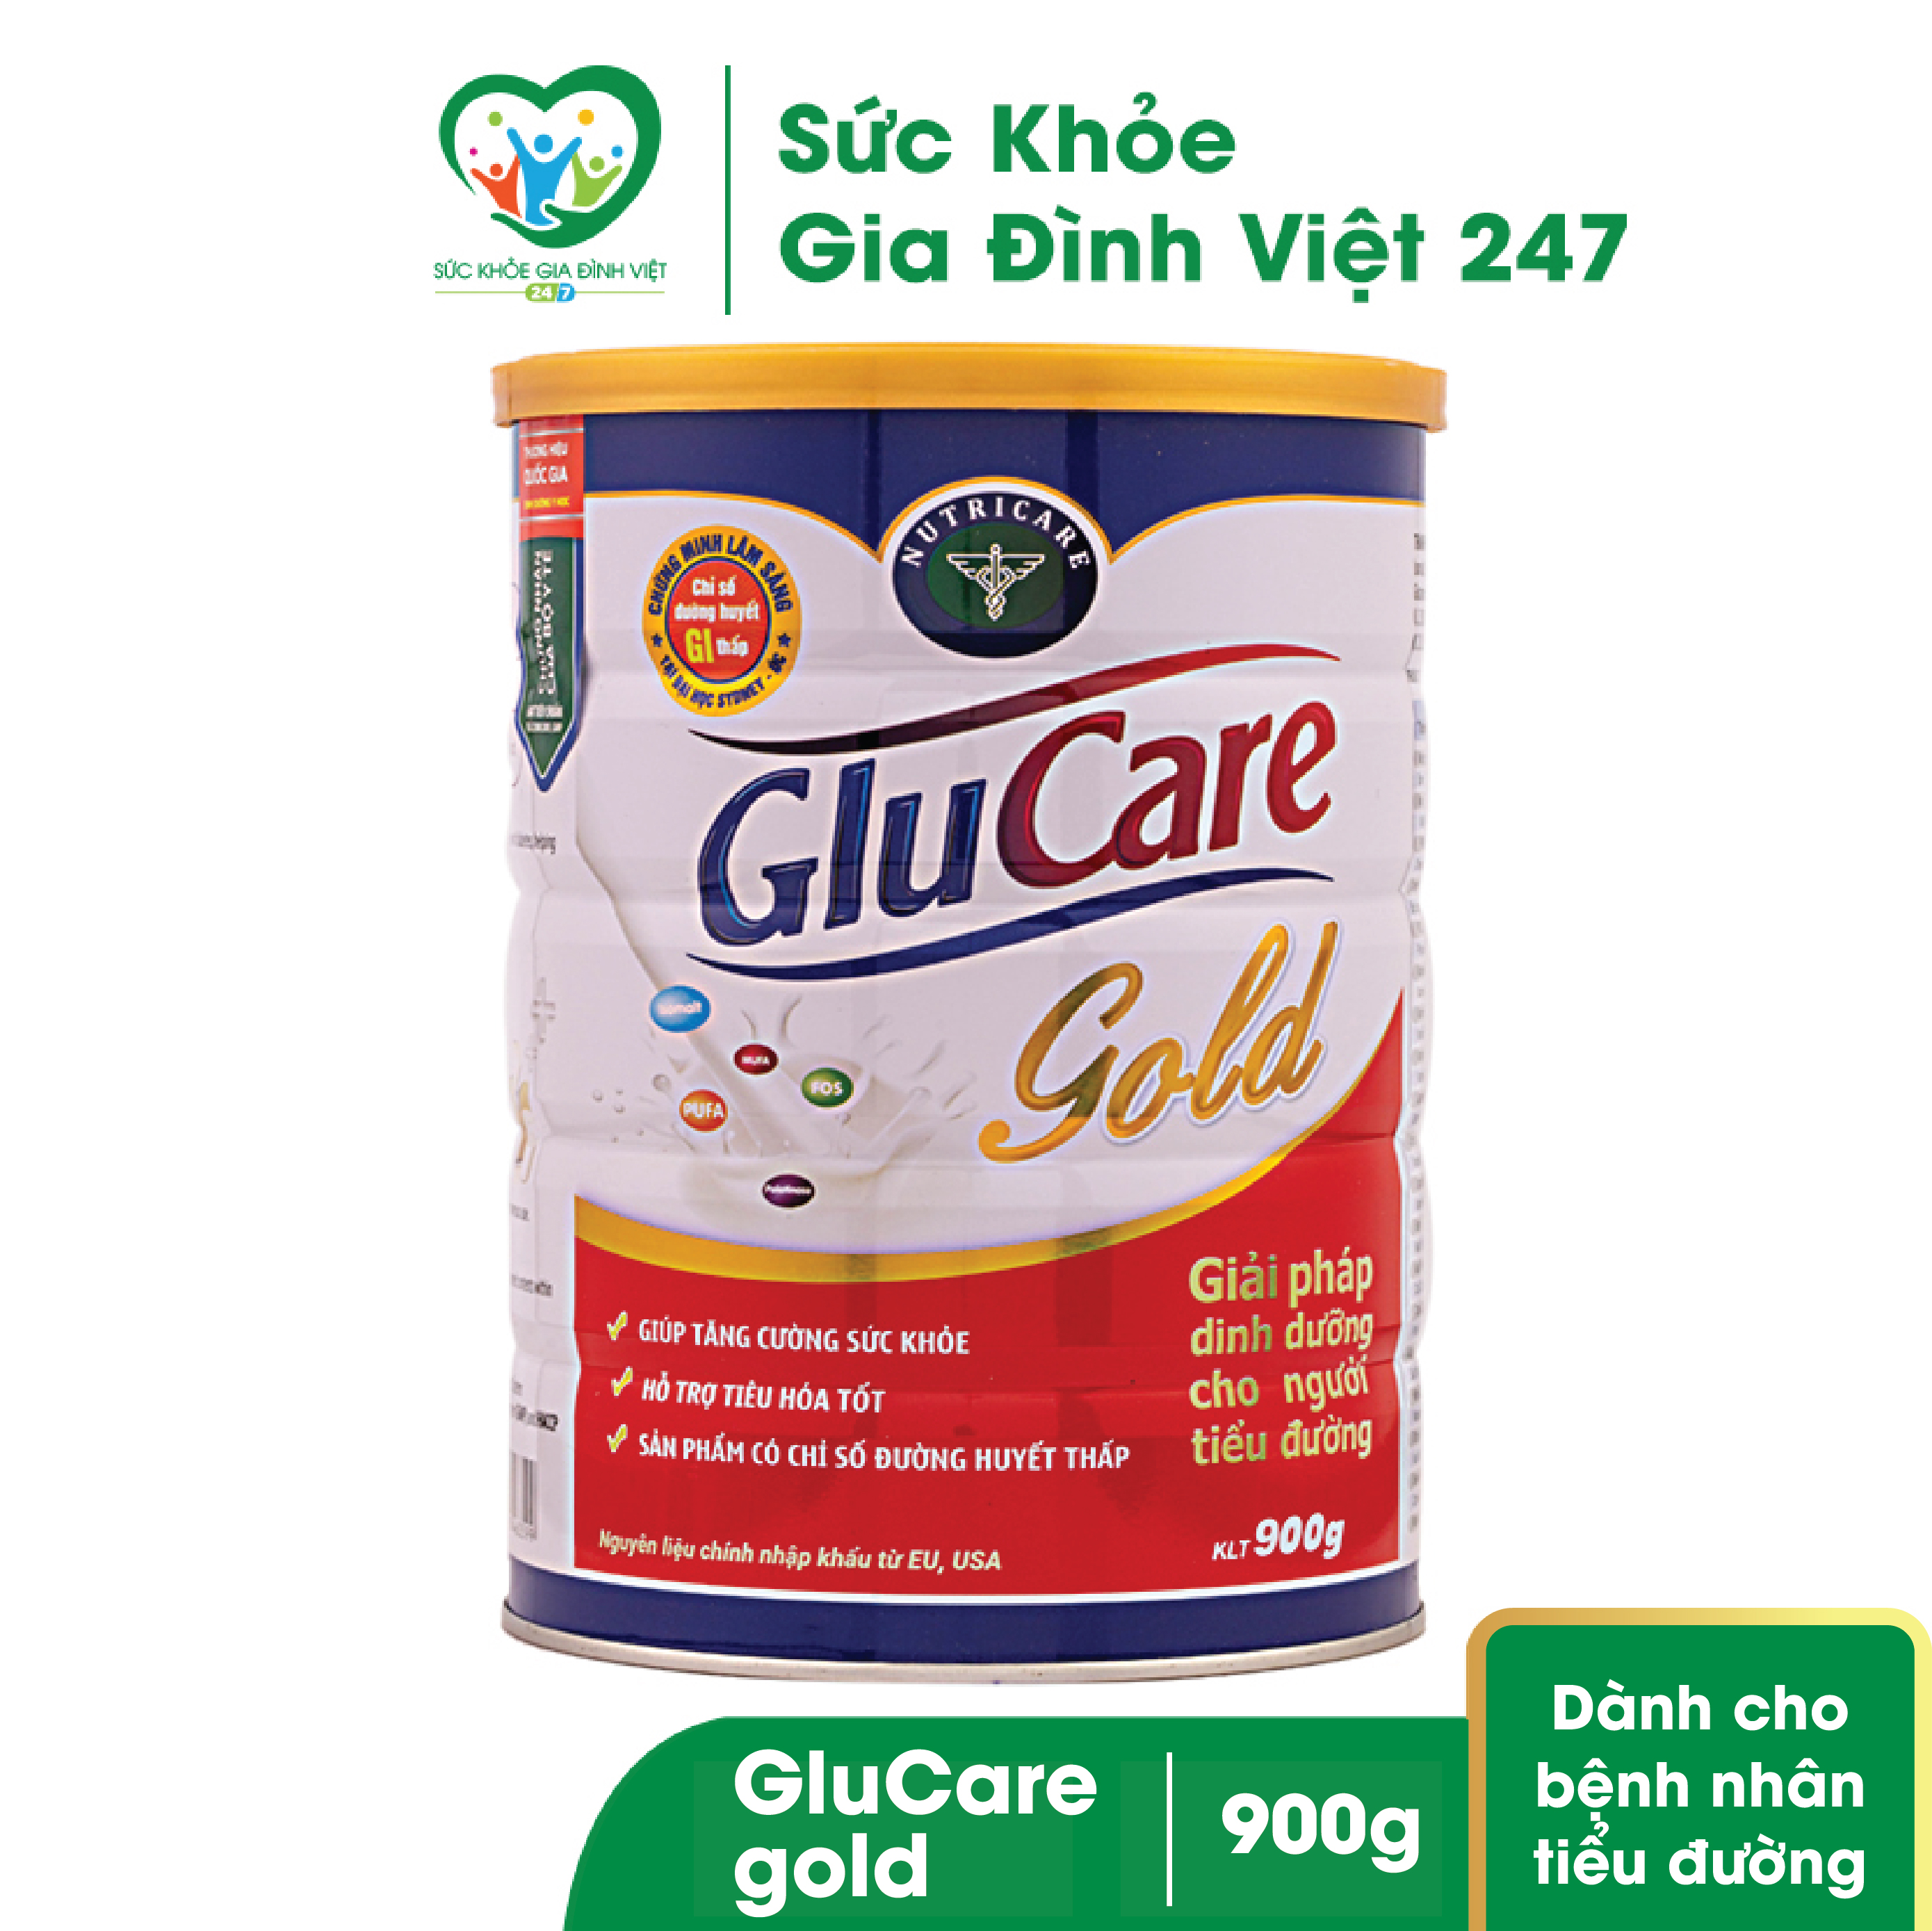 Sữa bột Glucare Gold dành cho người tiểu đường 900g